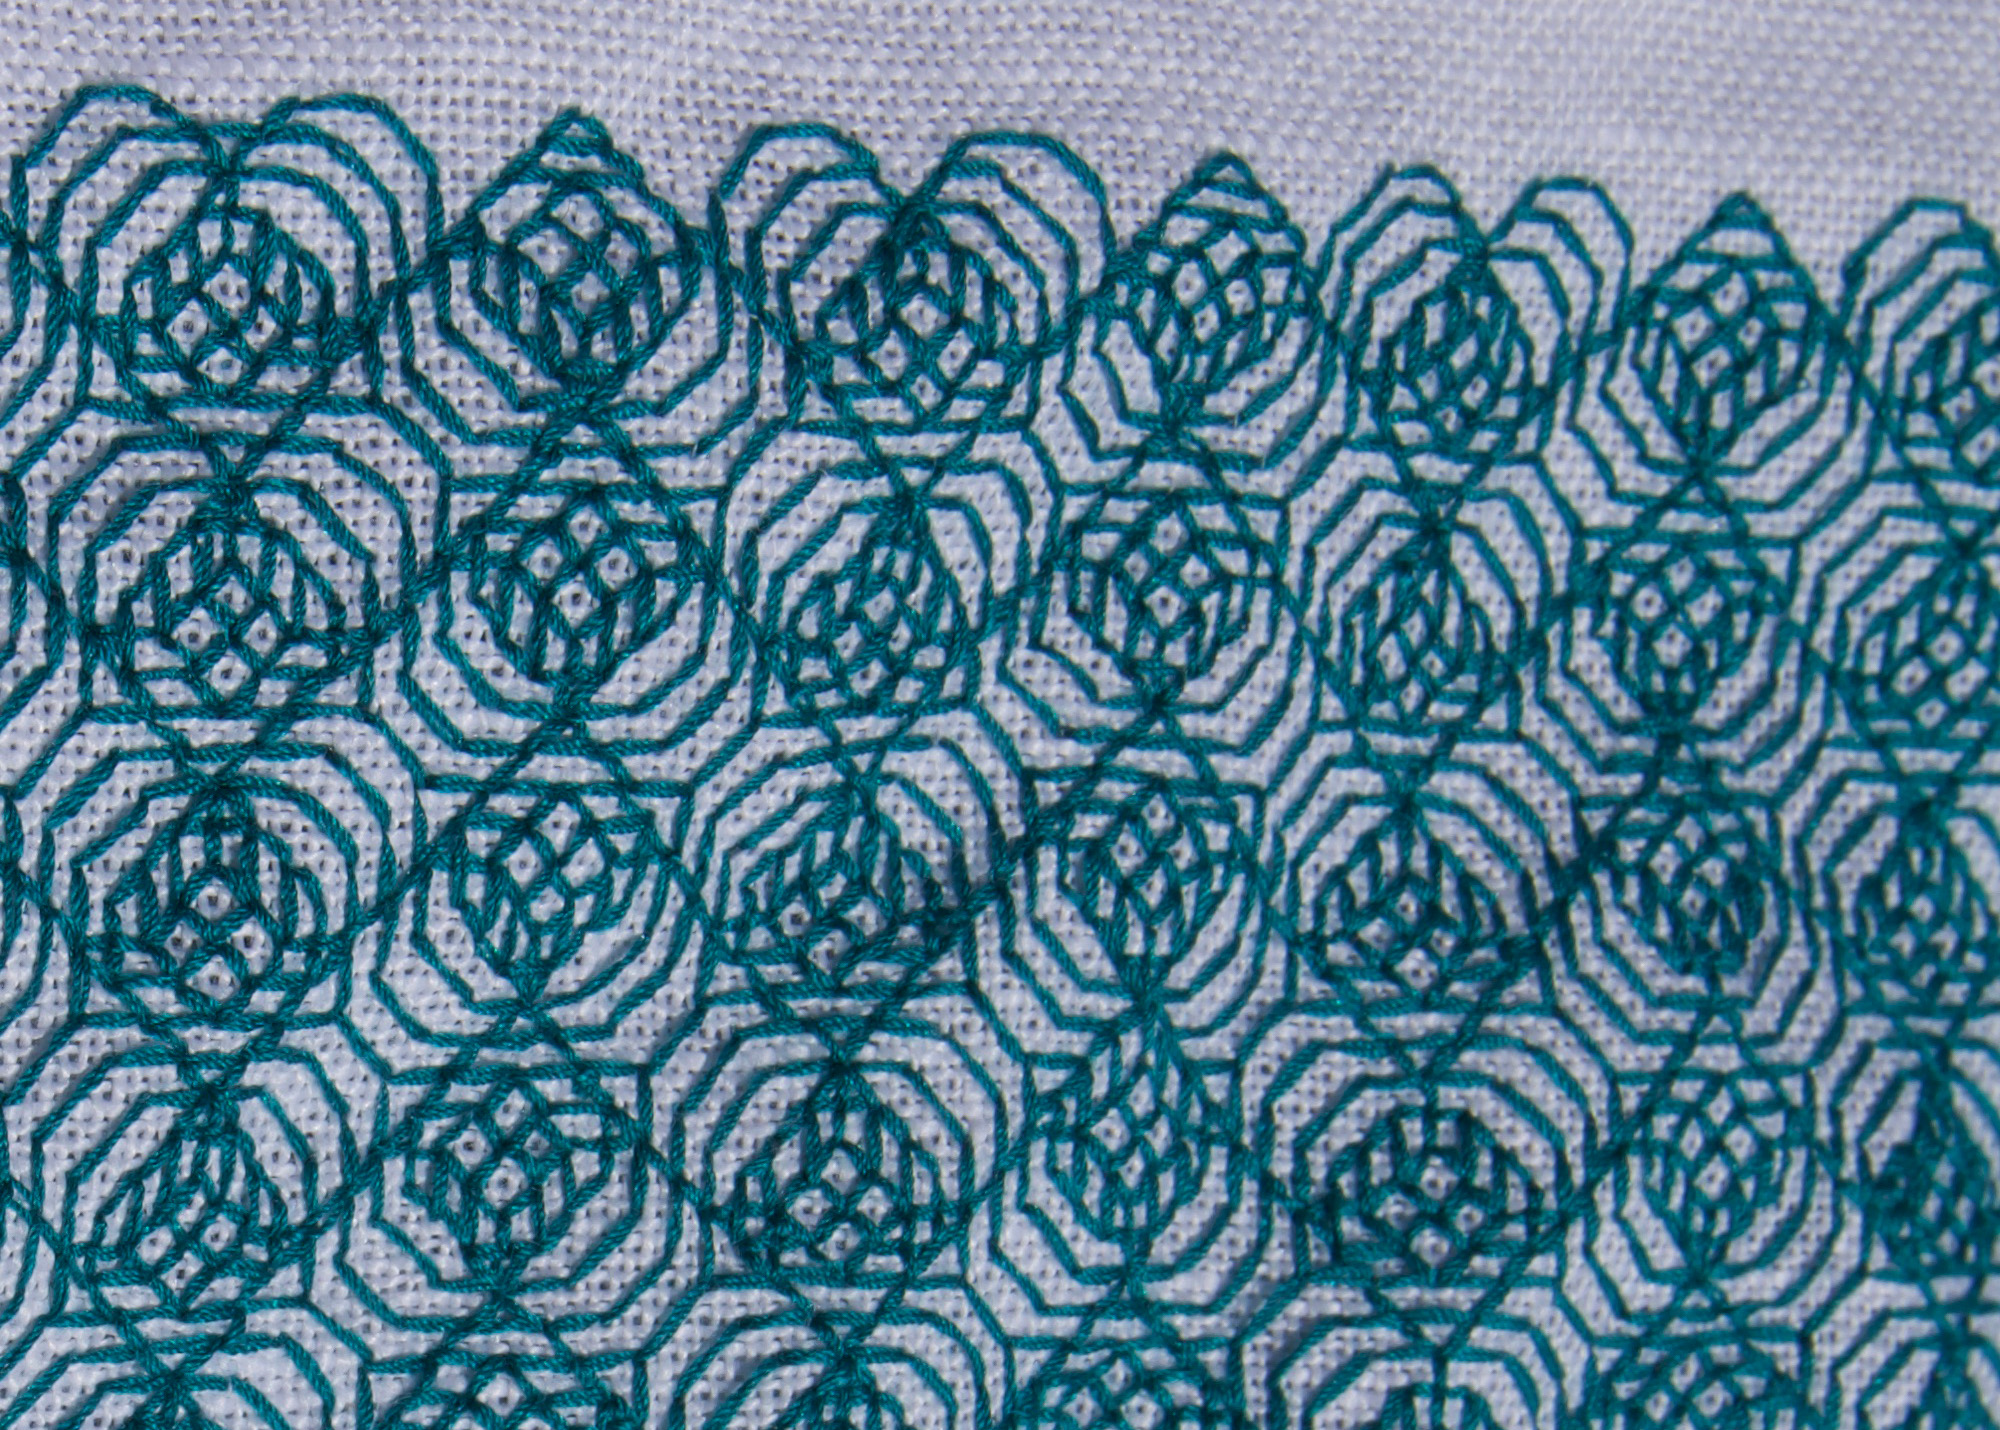 heart-motif diaper pattern in green silk on white linen